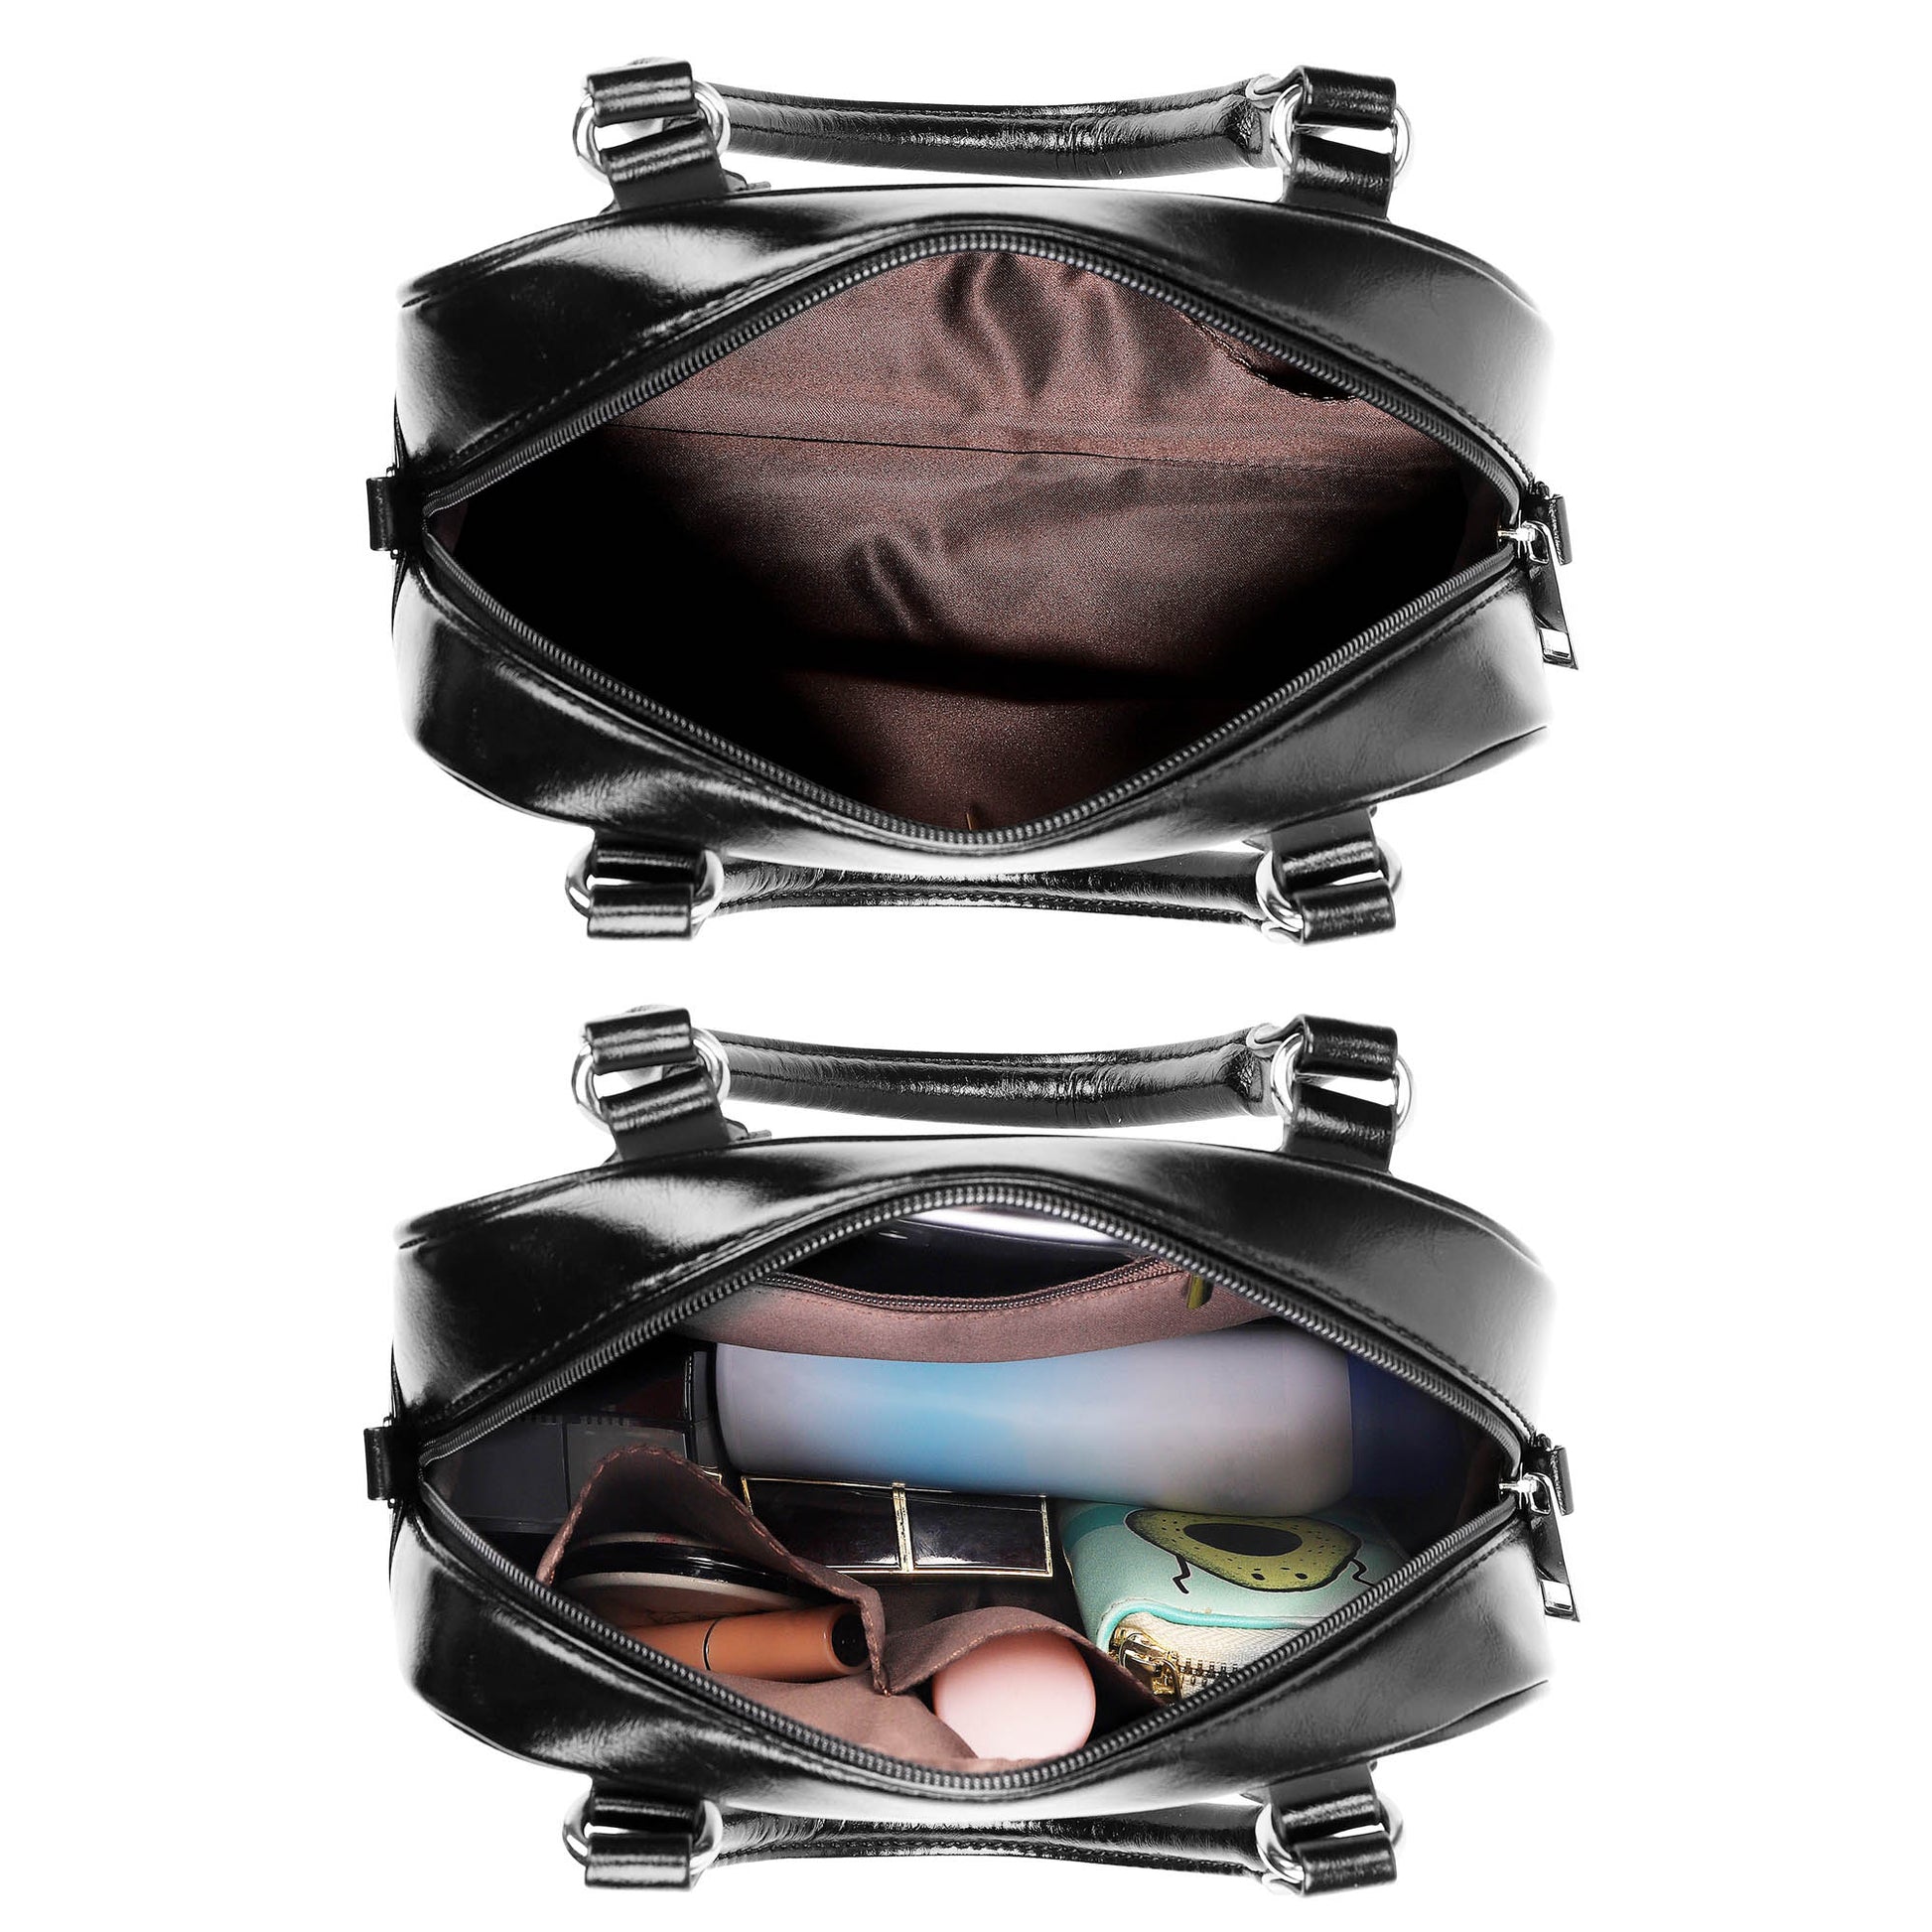 MacKinnon Tartan Shoulder Handbags - Tartanvibesclothing